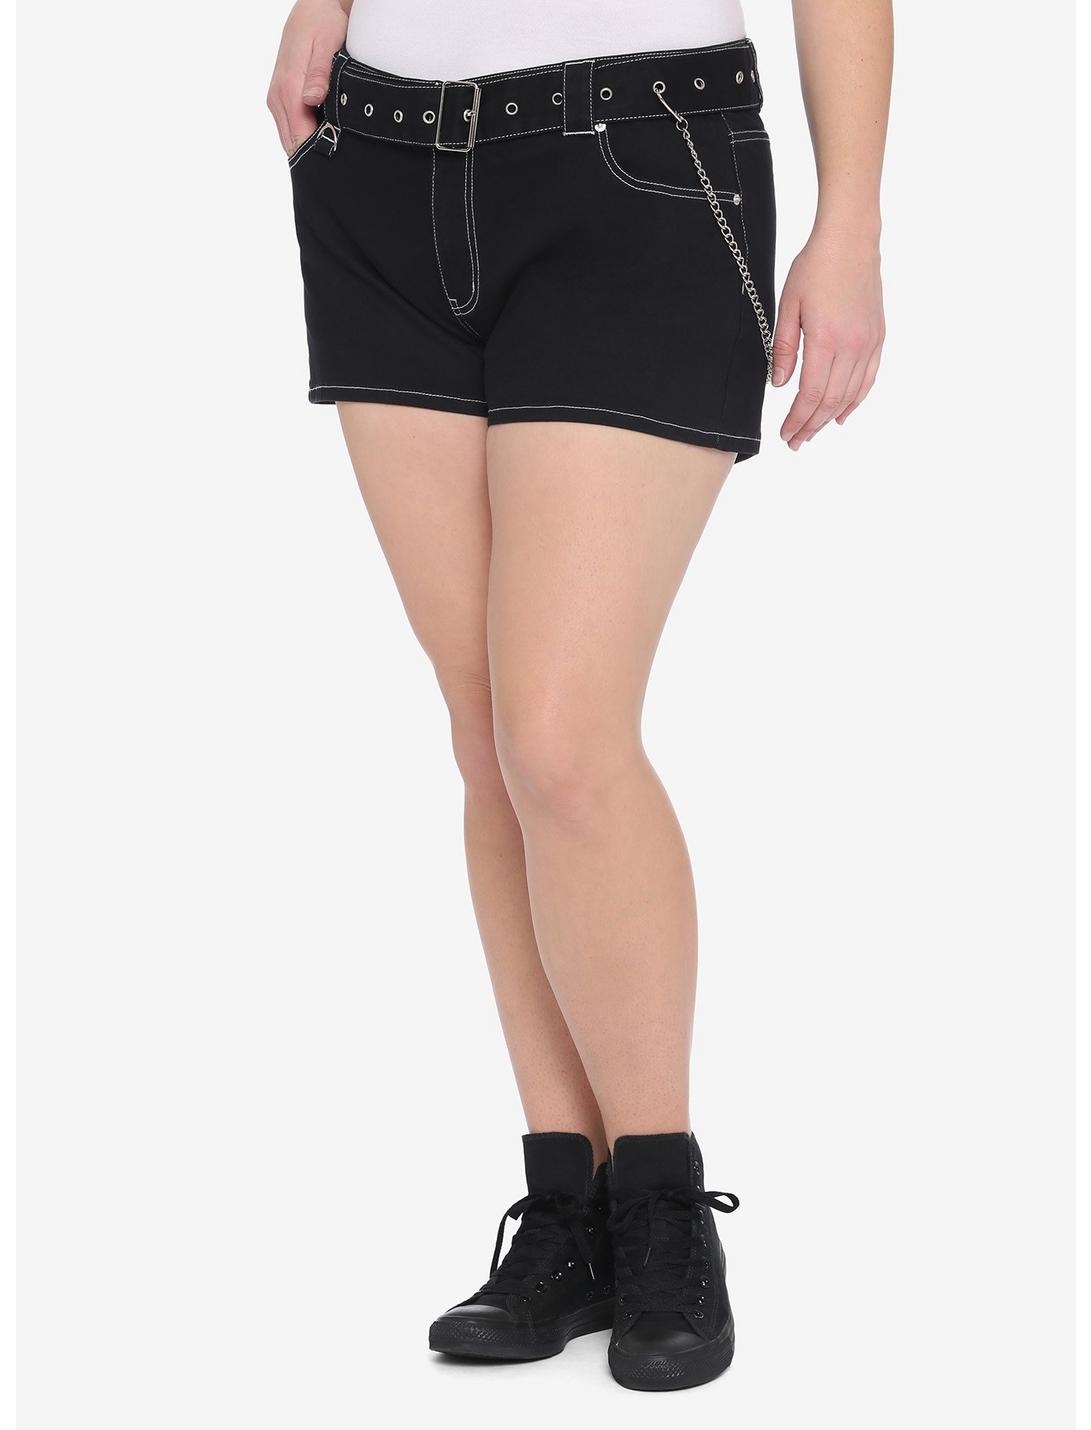 Black Grommet Belt White Stitch Shorts With Detachable Chain Plus Size, BLACK, hi-res